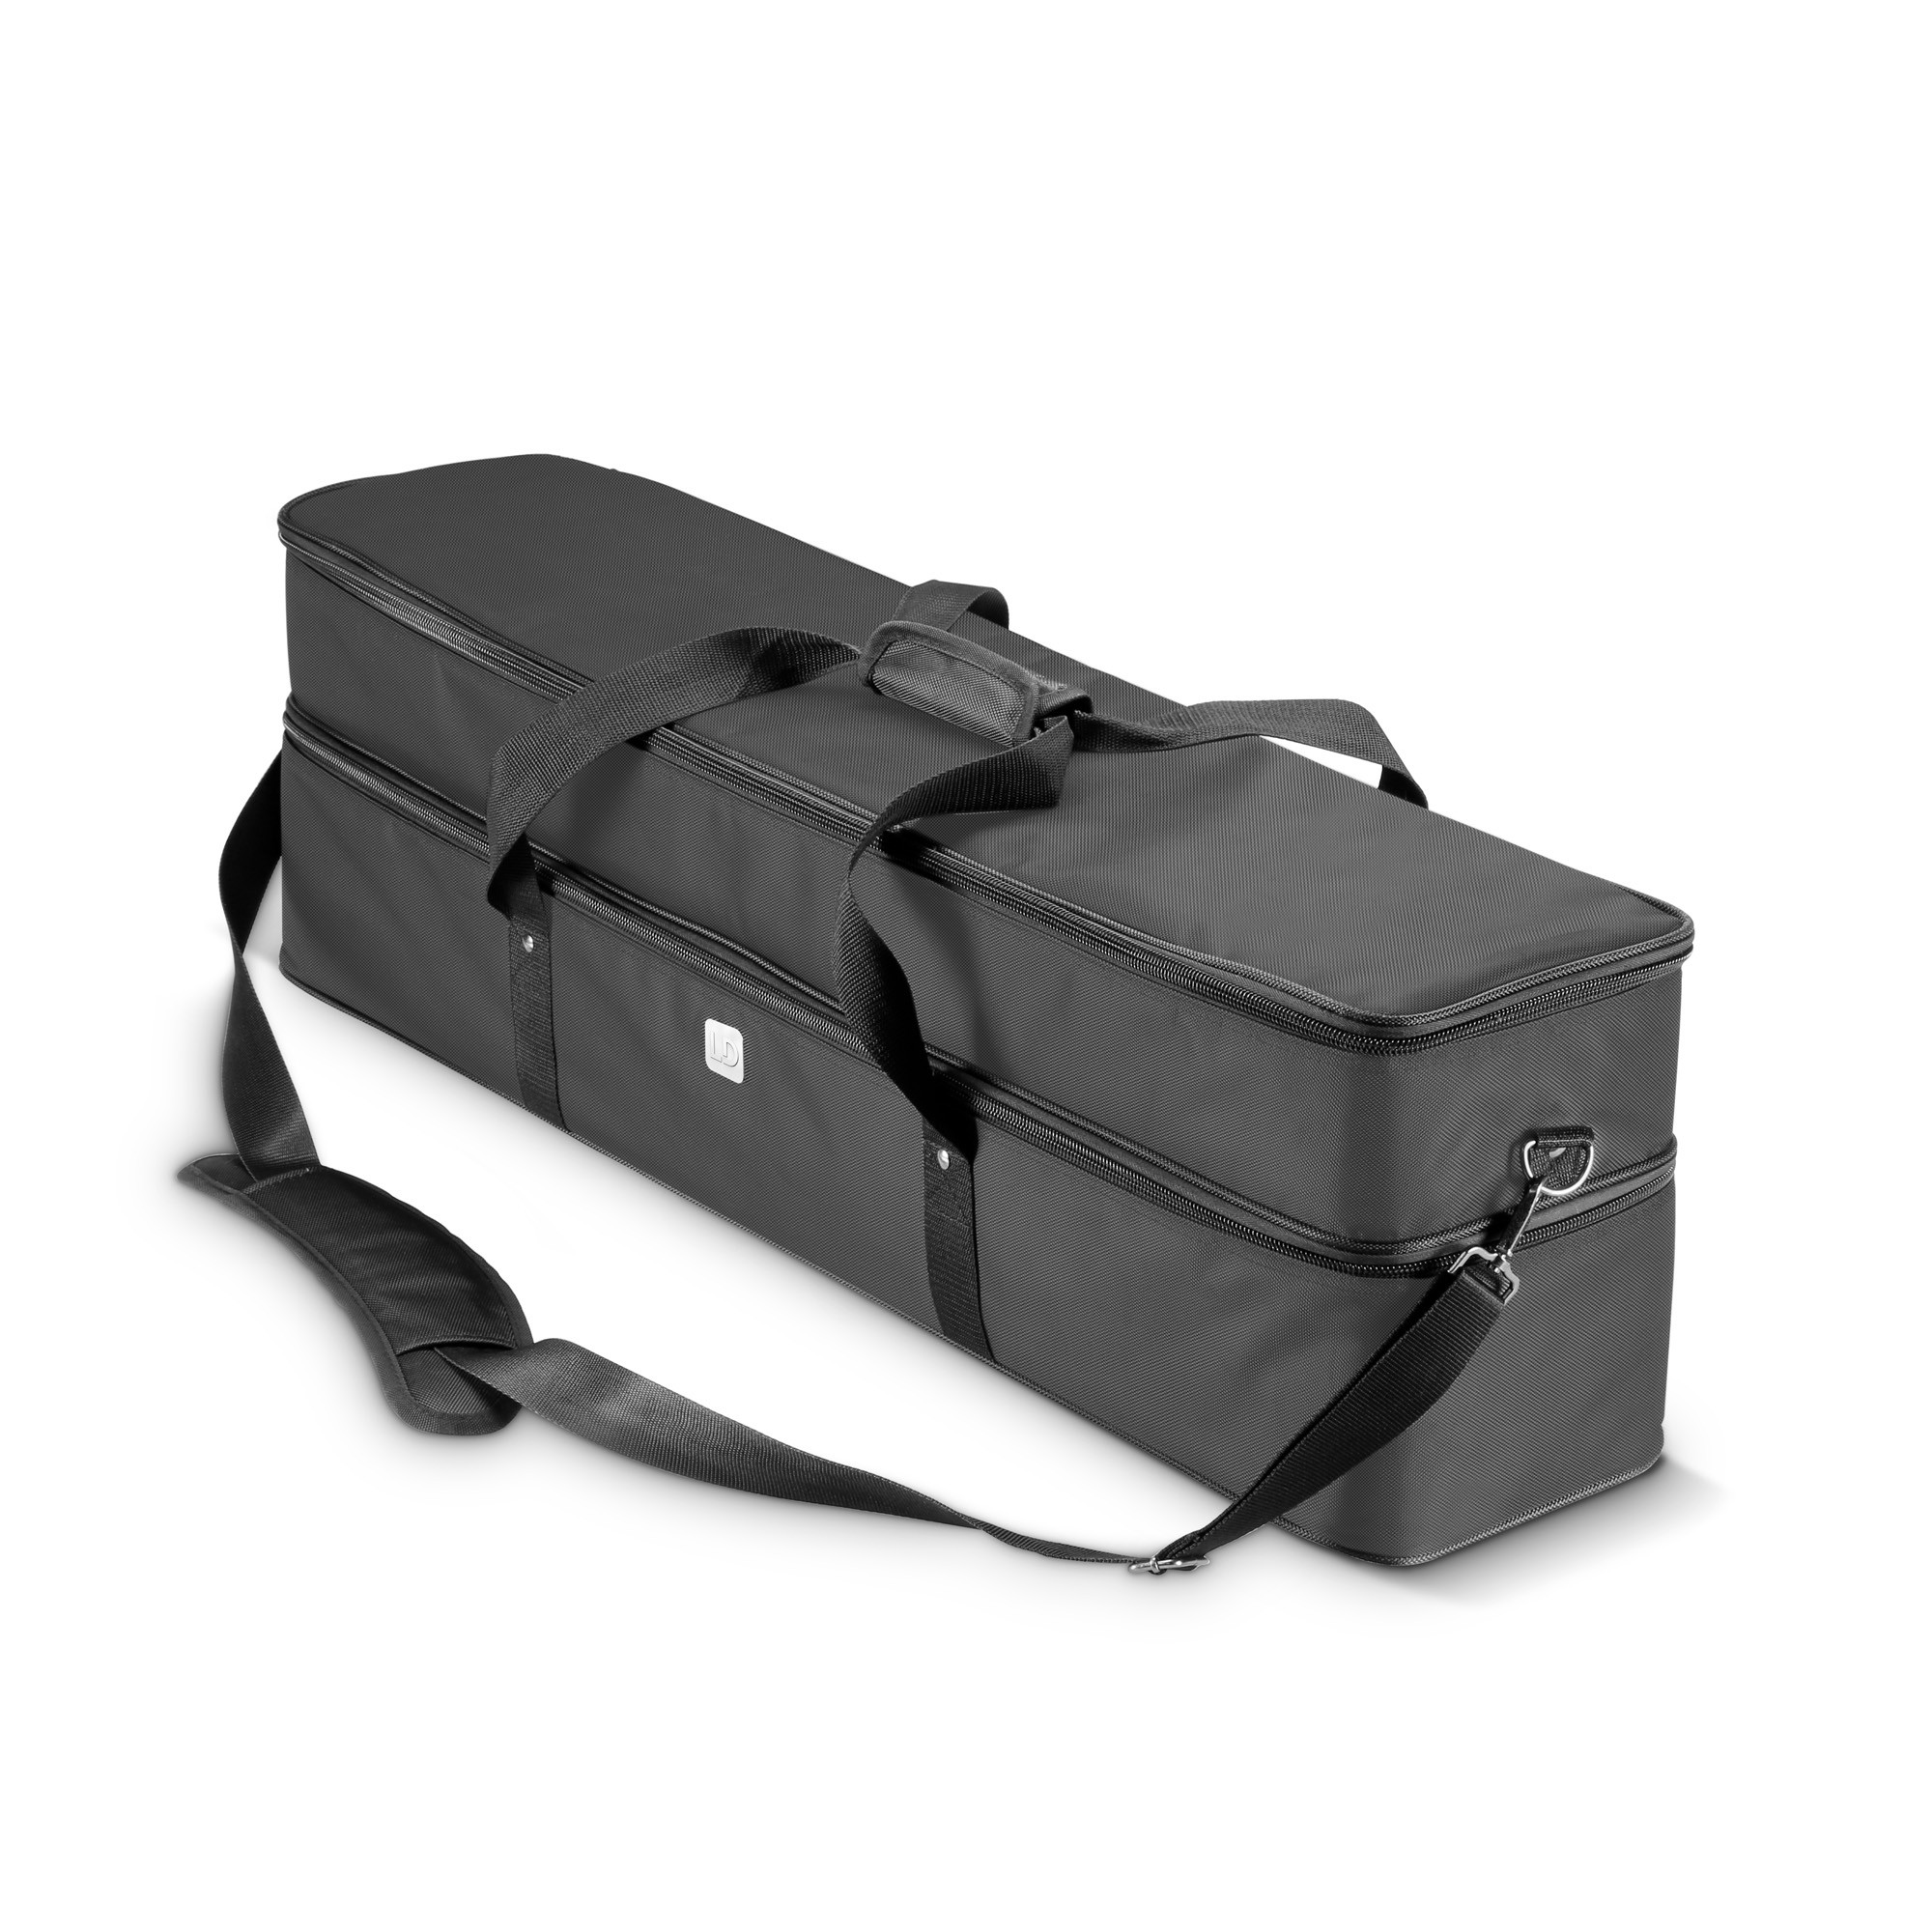 Ld Systems Curv 500 Ts Sat Bag - Bag for speakers & subwoofer - Variation 4